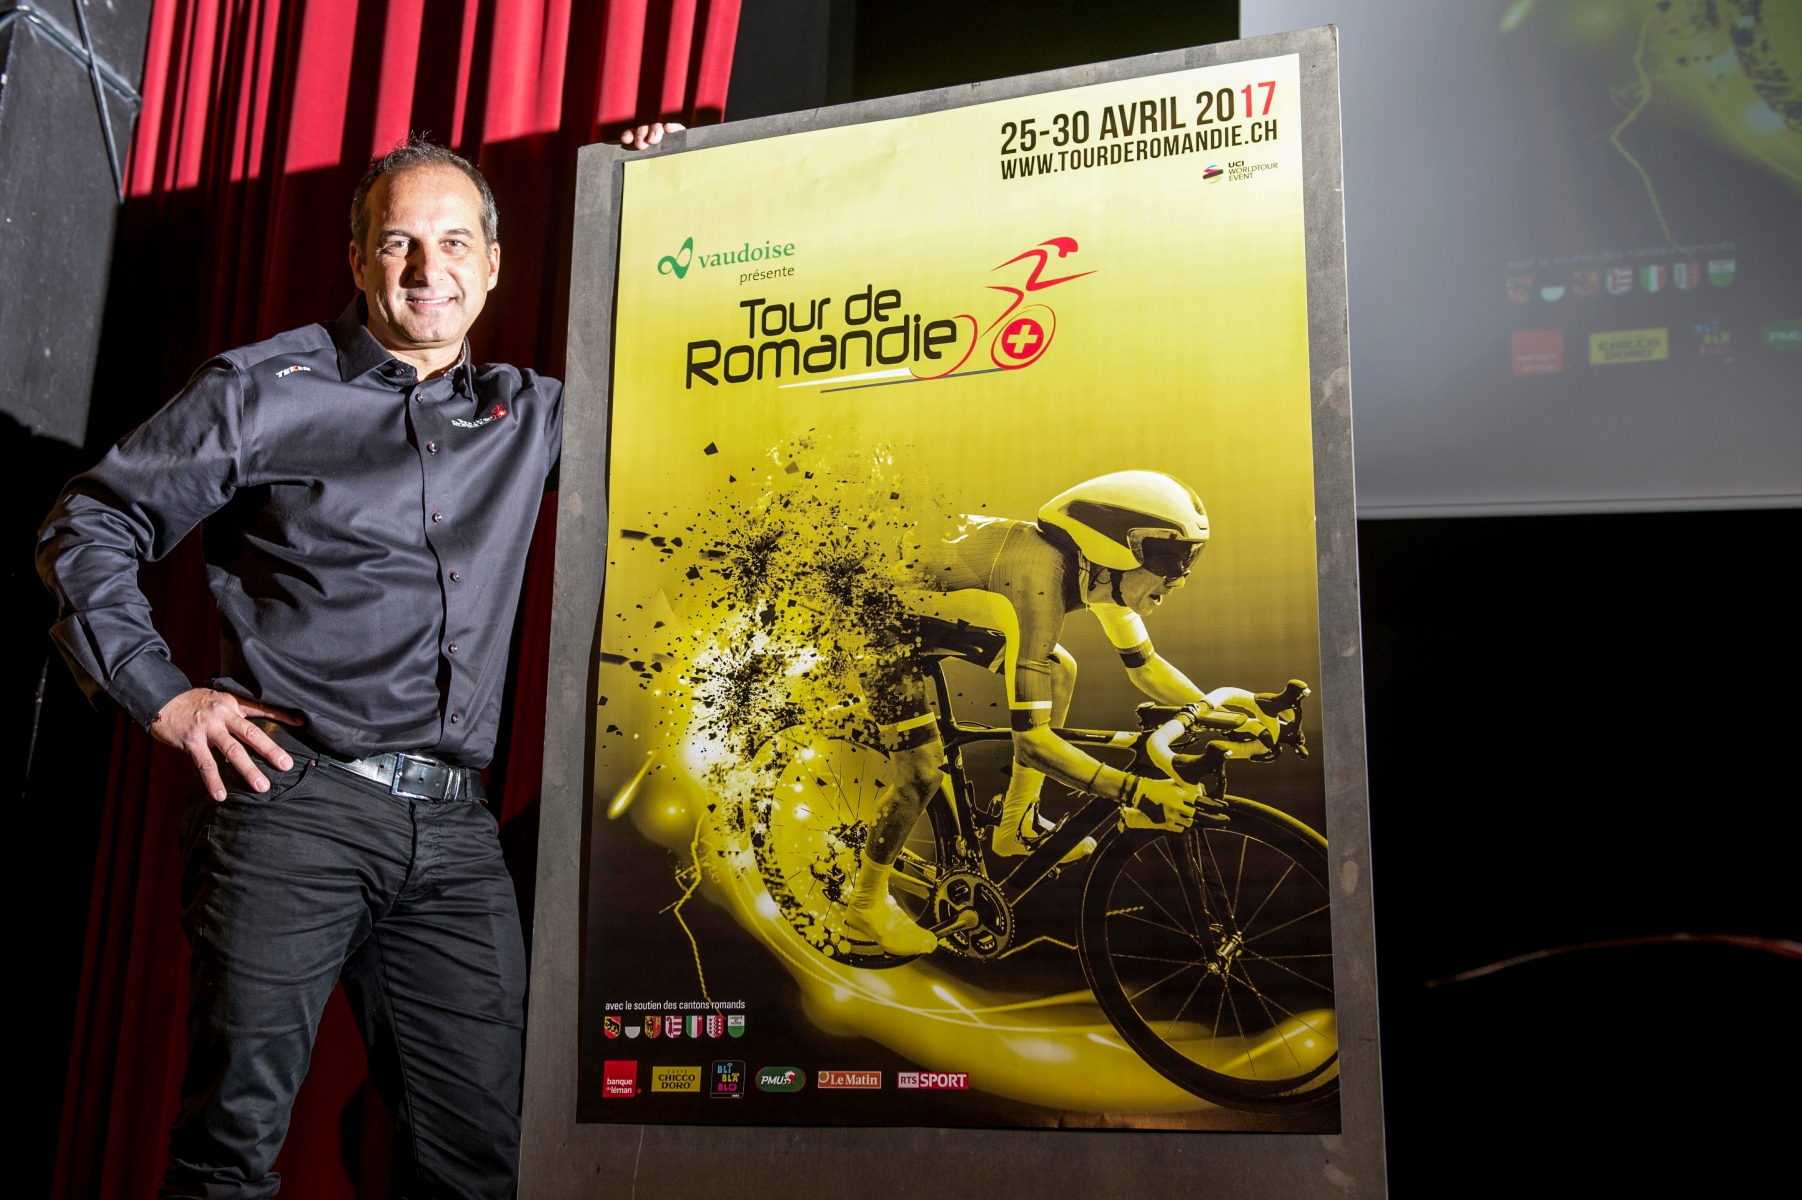 Richard Chassot, directeur du Tour de Romandie, pose a cote de la nouvelle affiche lors de la conference de presse de presentation du Tour de Romandie 2017, ce vendredi 9 decembre 2016 a Payerne. (KEYSTONE/Leo Duperrex) SUISSE AFFICHE TOUR DE ROMANDIE 2017